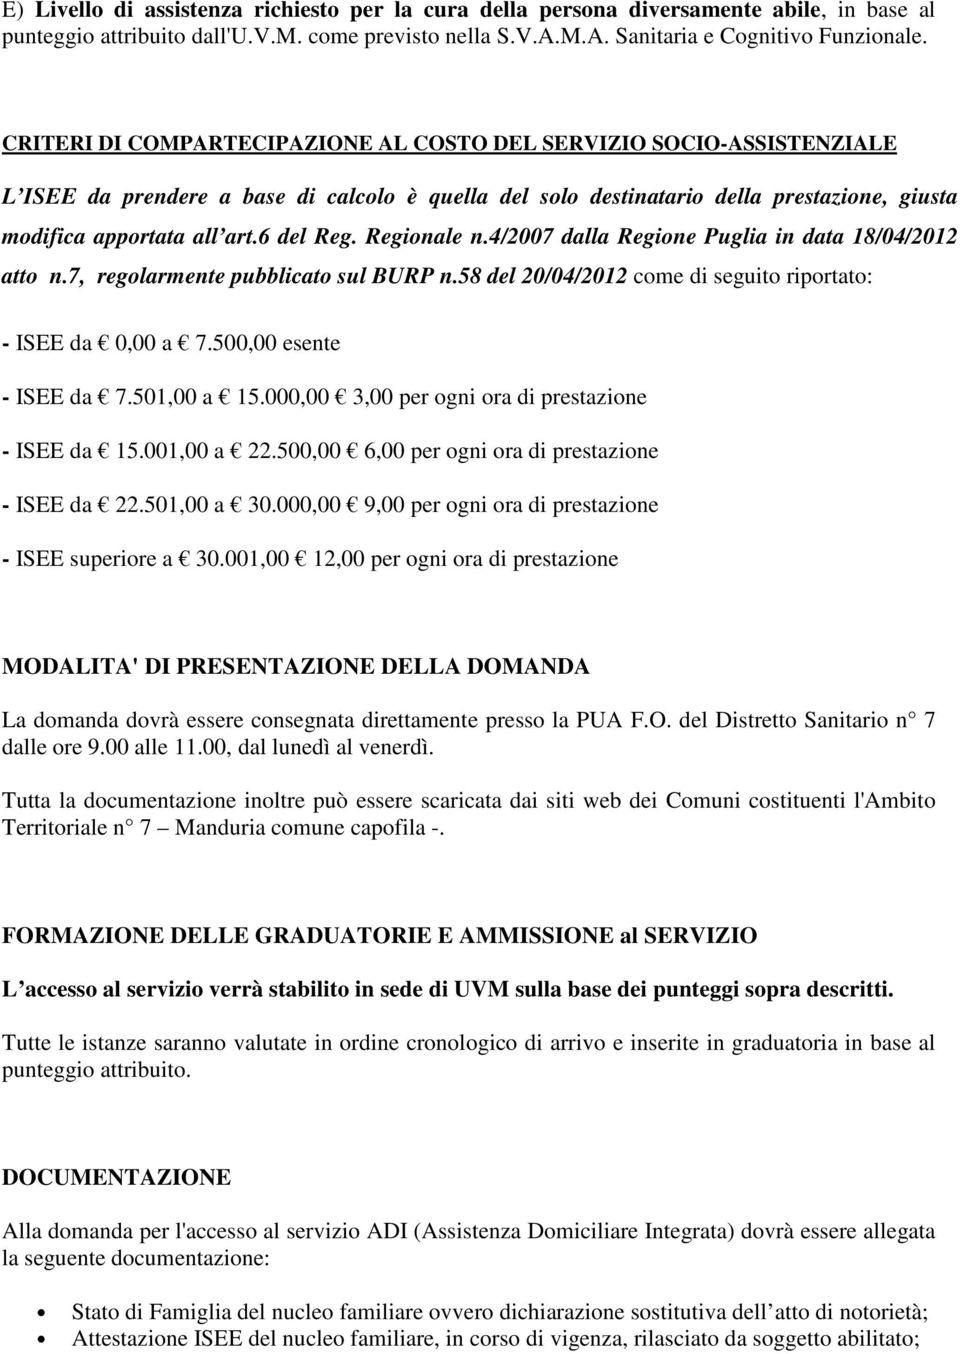 6 del Reg. Regionale n.4/2007 dalla Regione Puglia in data 18/04/2012 atto n.7, regolarmente pubblicato sul BURP n.58 del 20/04/2012 come di seguito riportato: - ISEE da 0,00 a 7.